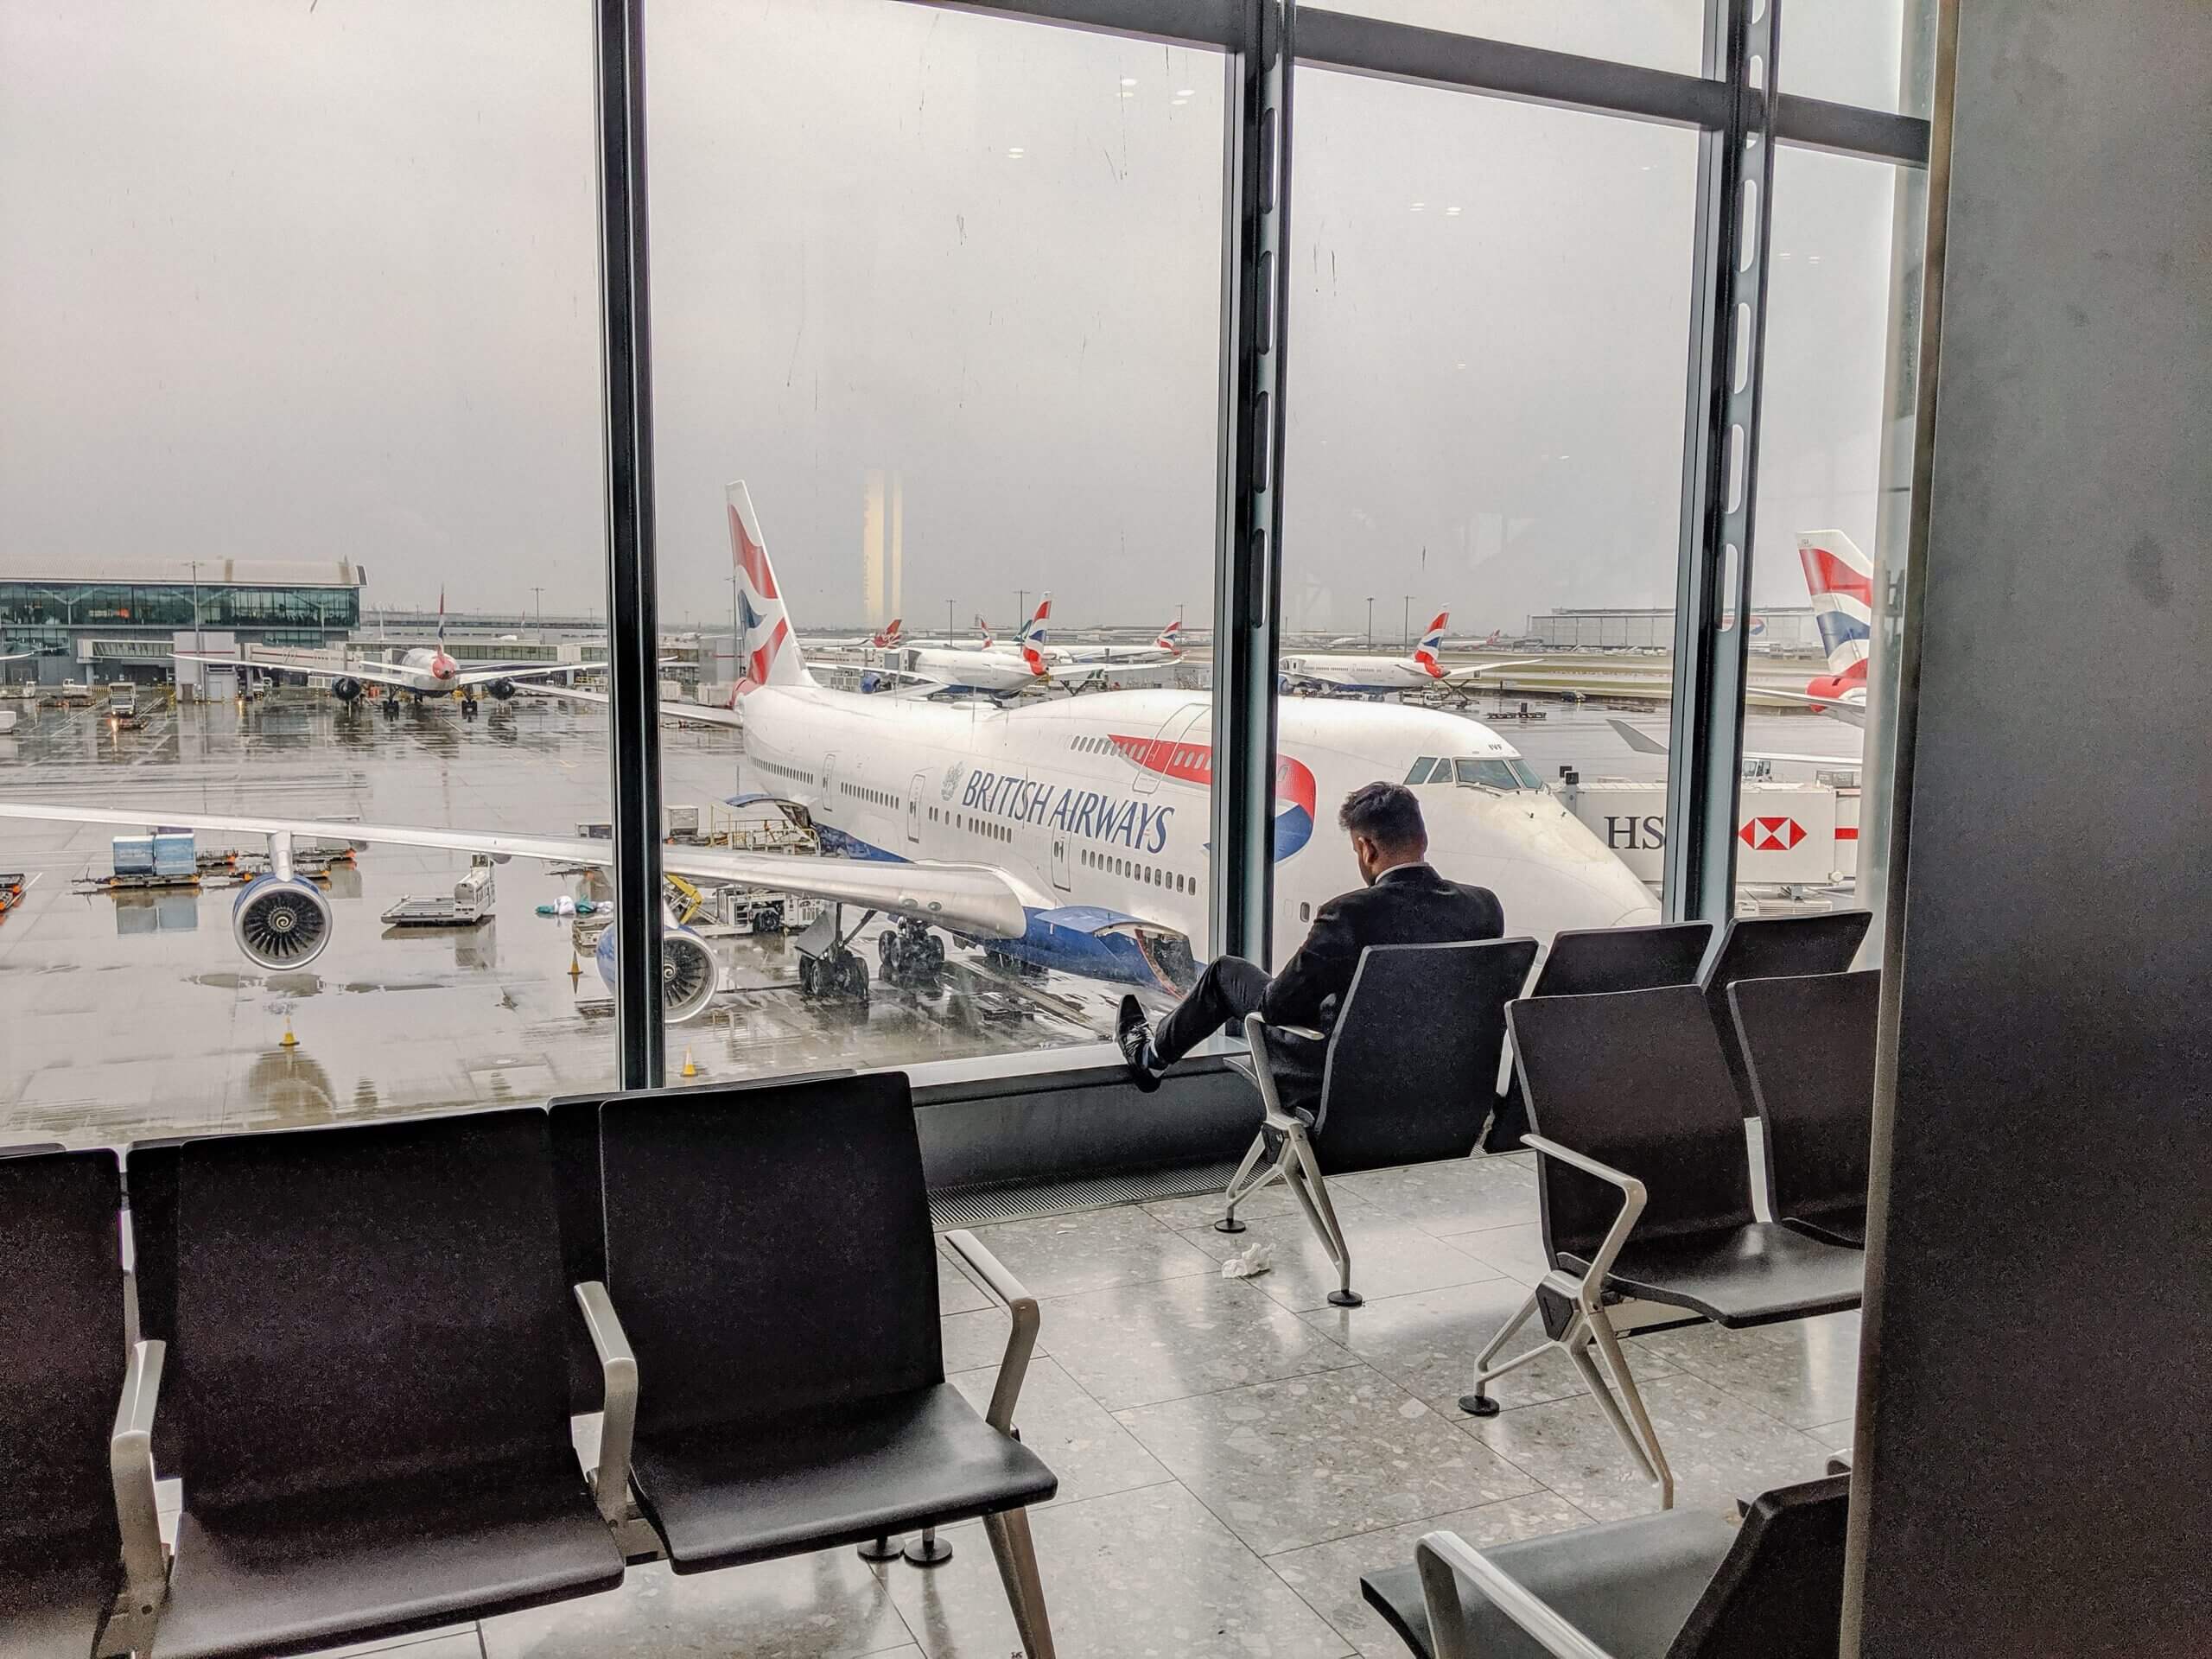 الخطوط البريطانية تعلن إلغاء الرحلات القصيرة من مطار هيثرو بسبب خلل تقني